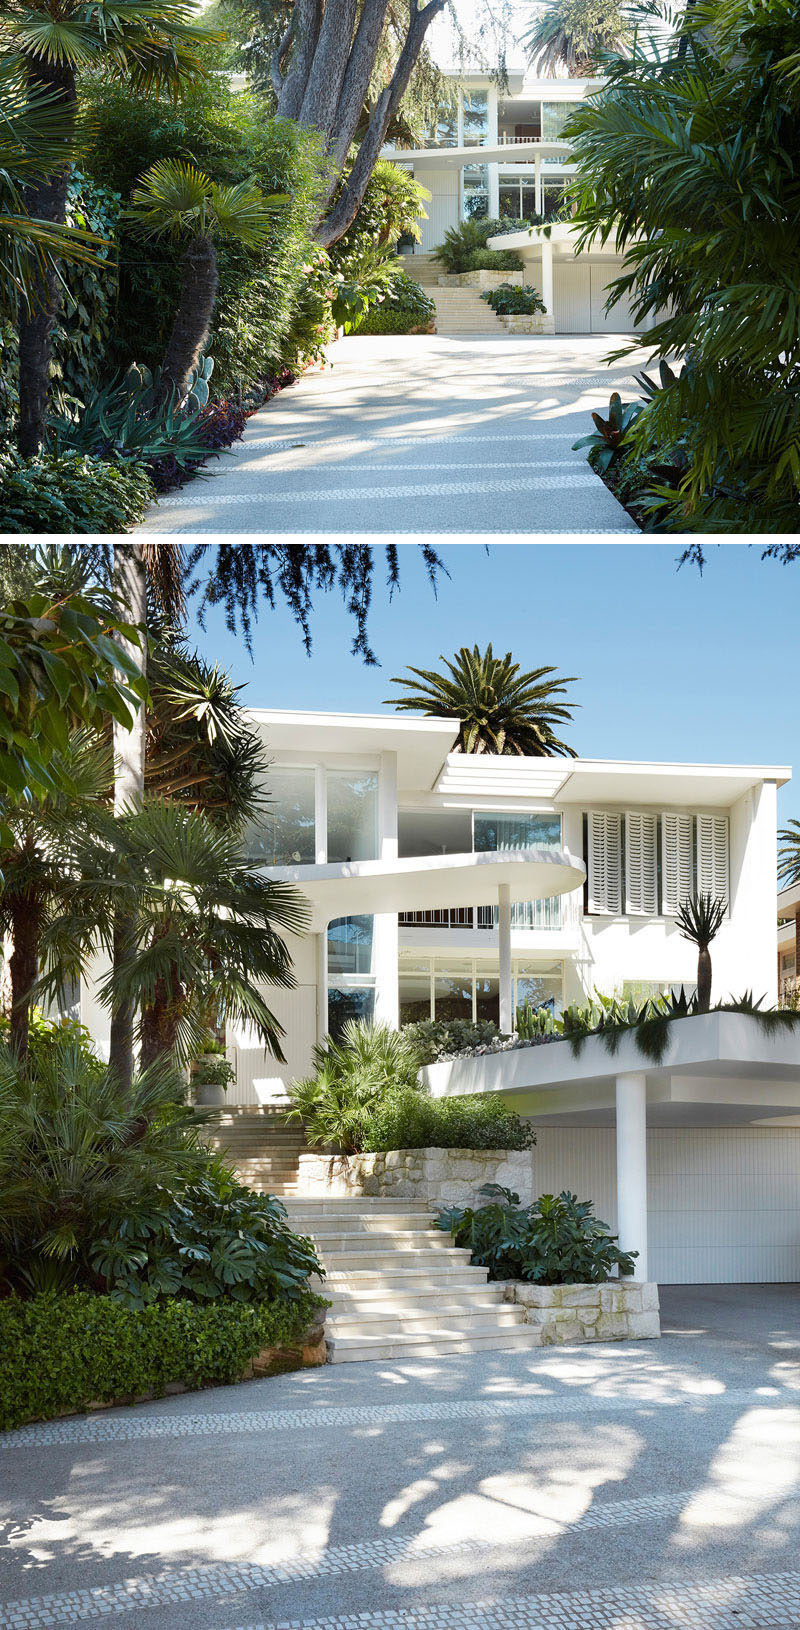  Архитектор Луиджи Росселли обновил дом в Бельвью-Хилл, Австралия, который был установлен в стиле классического модерна архитектора Джорджем Ривзом в 1963 году. #ModernHouse #ModernArchitecture 